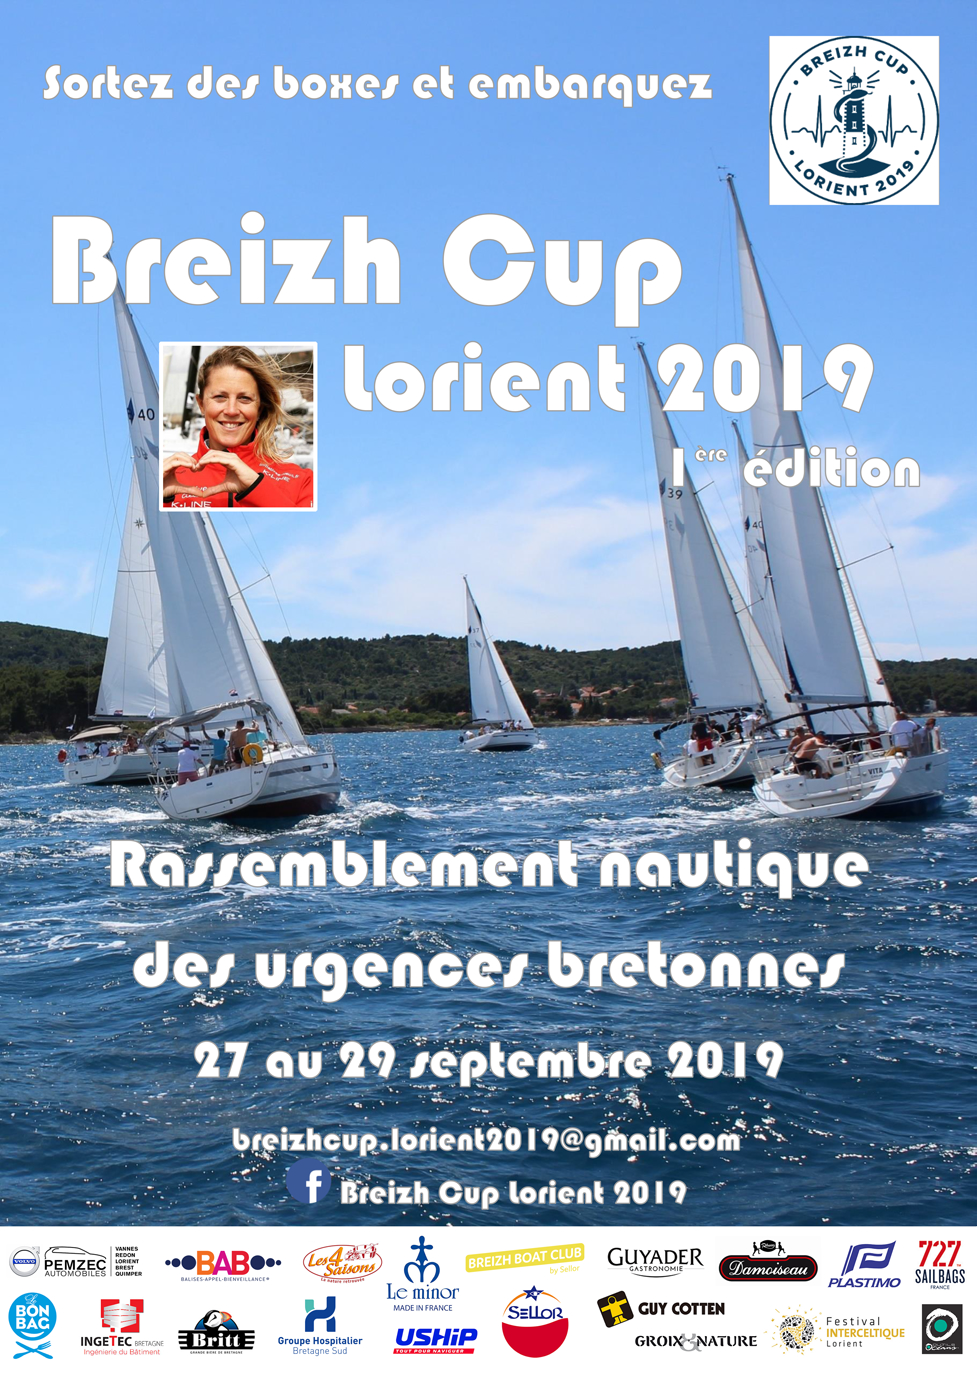 Breizh Cup Lorient 2019, événement nautique des urgentistes bretons et parrainé par Samantha Davies. BAB'So est partenaire de cet événement dont le but est de soulever des fonds pour des enfants en difficulté.